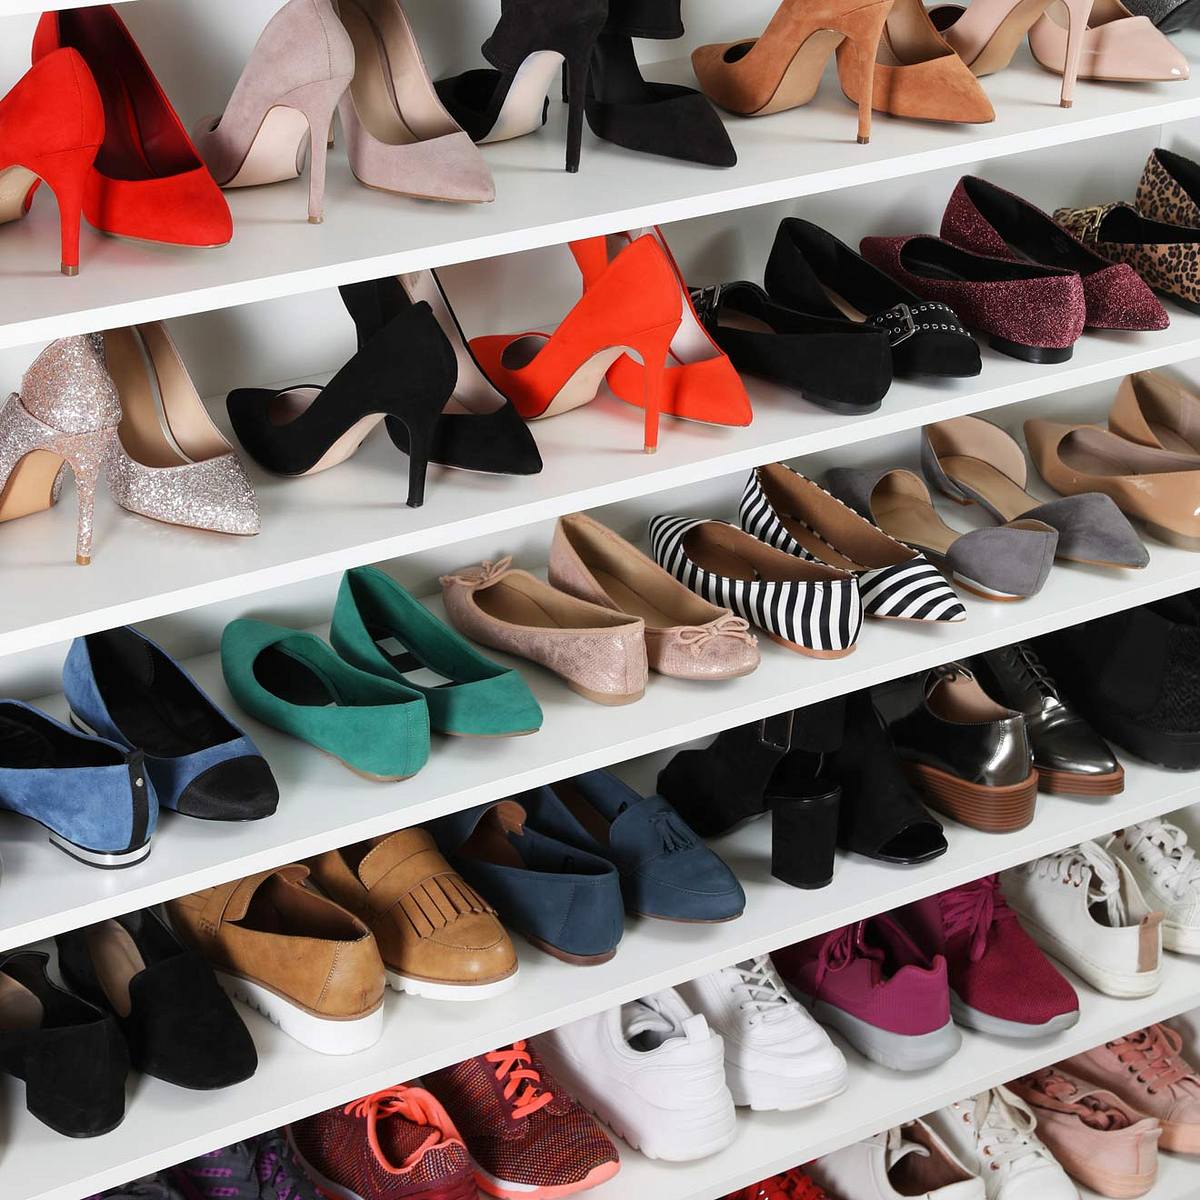 10 Gewohnheiten, die deine Klamotten ruinieren: Du verstaust deine Schuhe falsch